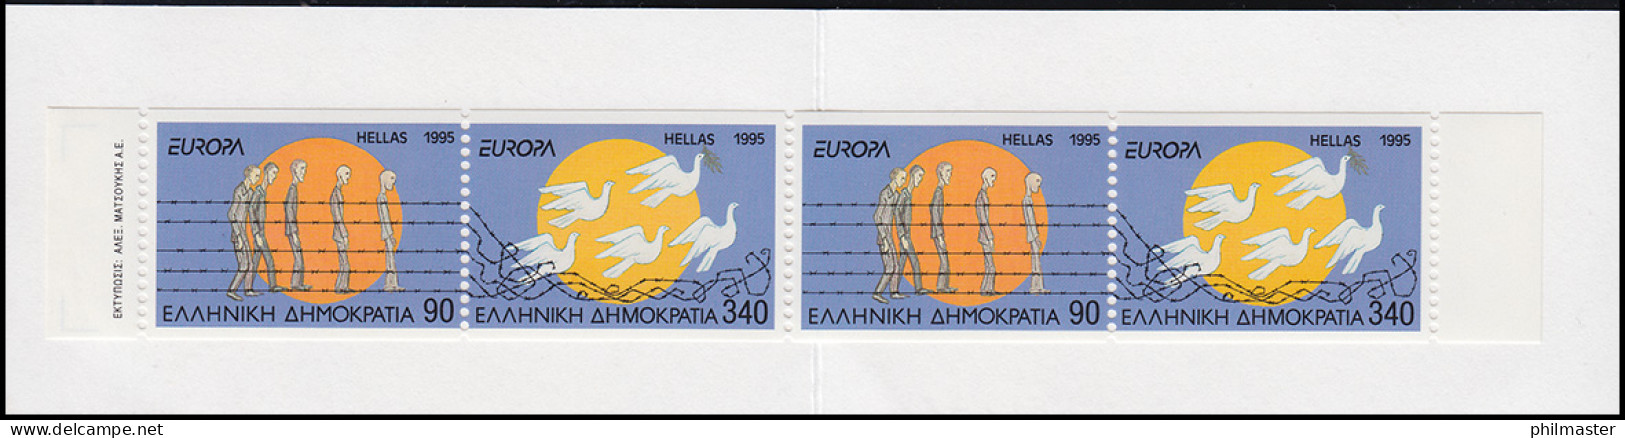 Griechenland Markenheftchen 18 Europa 1995, ** Postfrisch - Markenheftchen